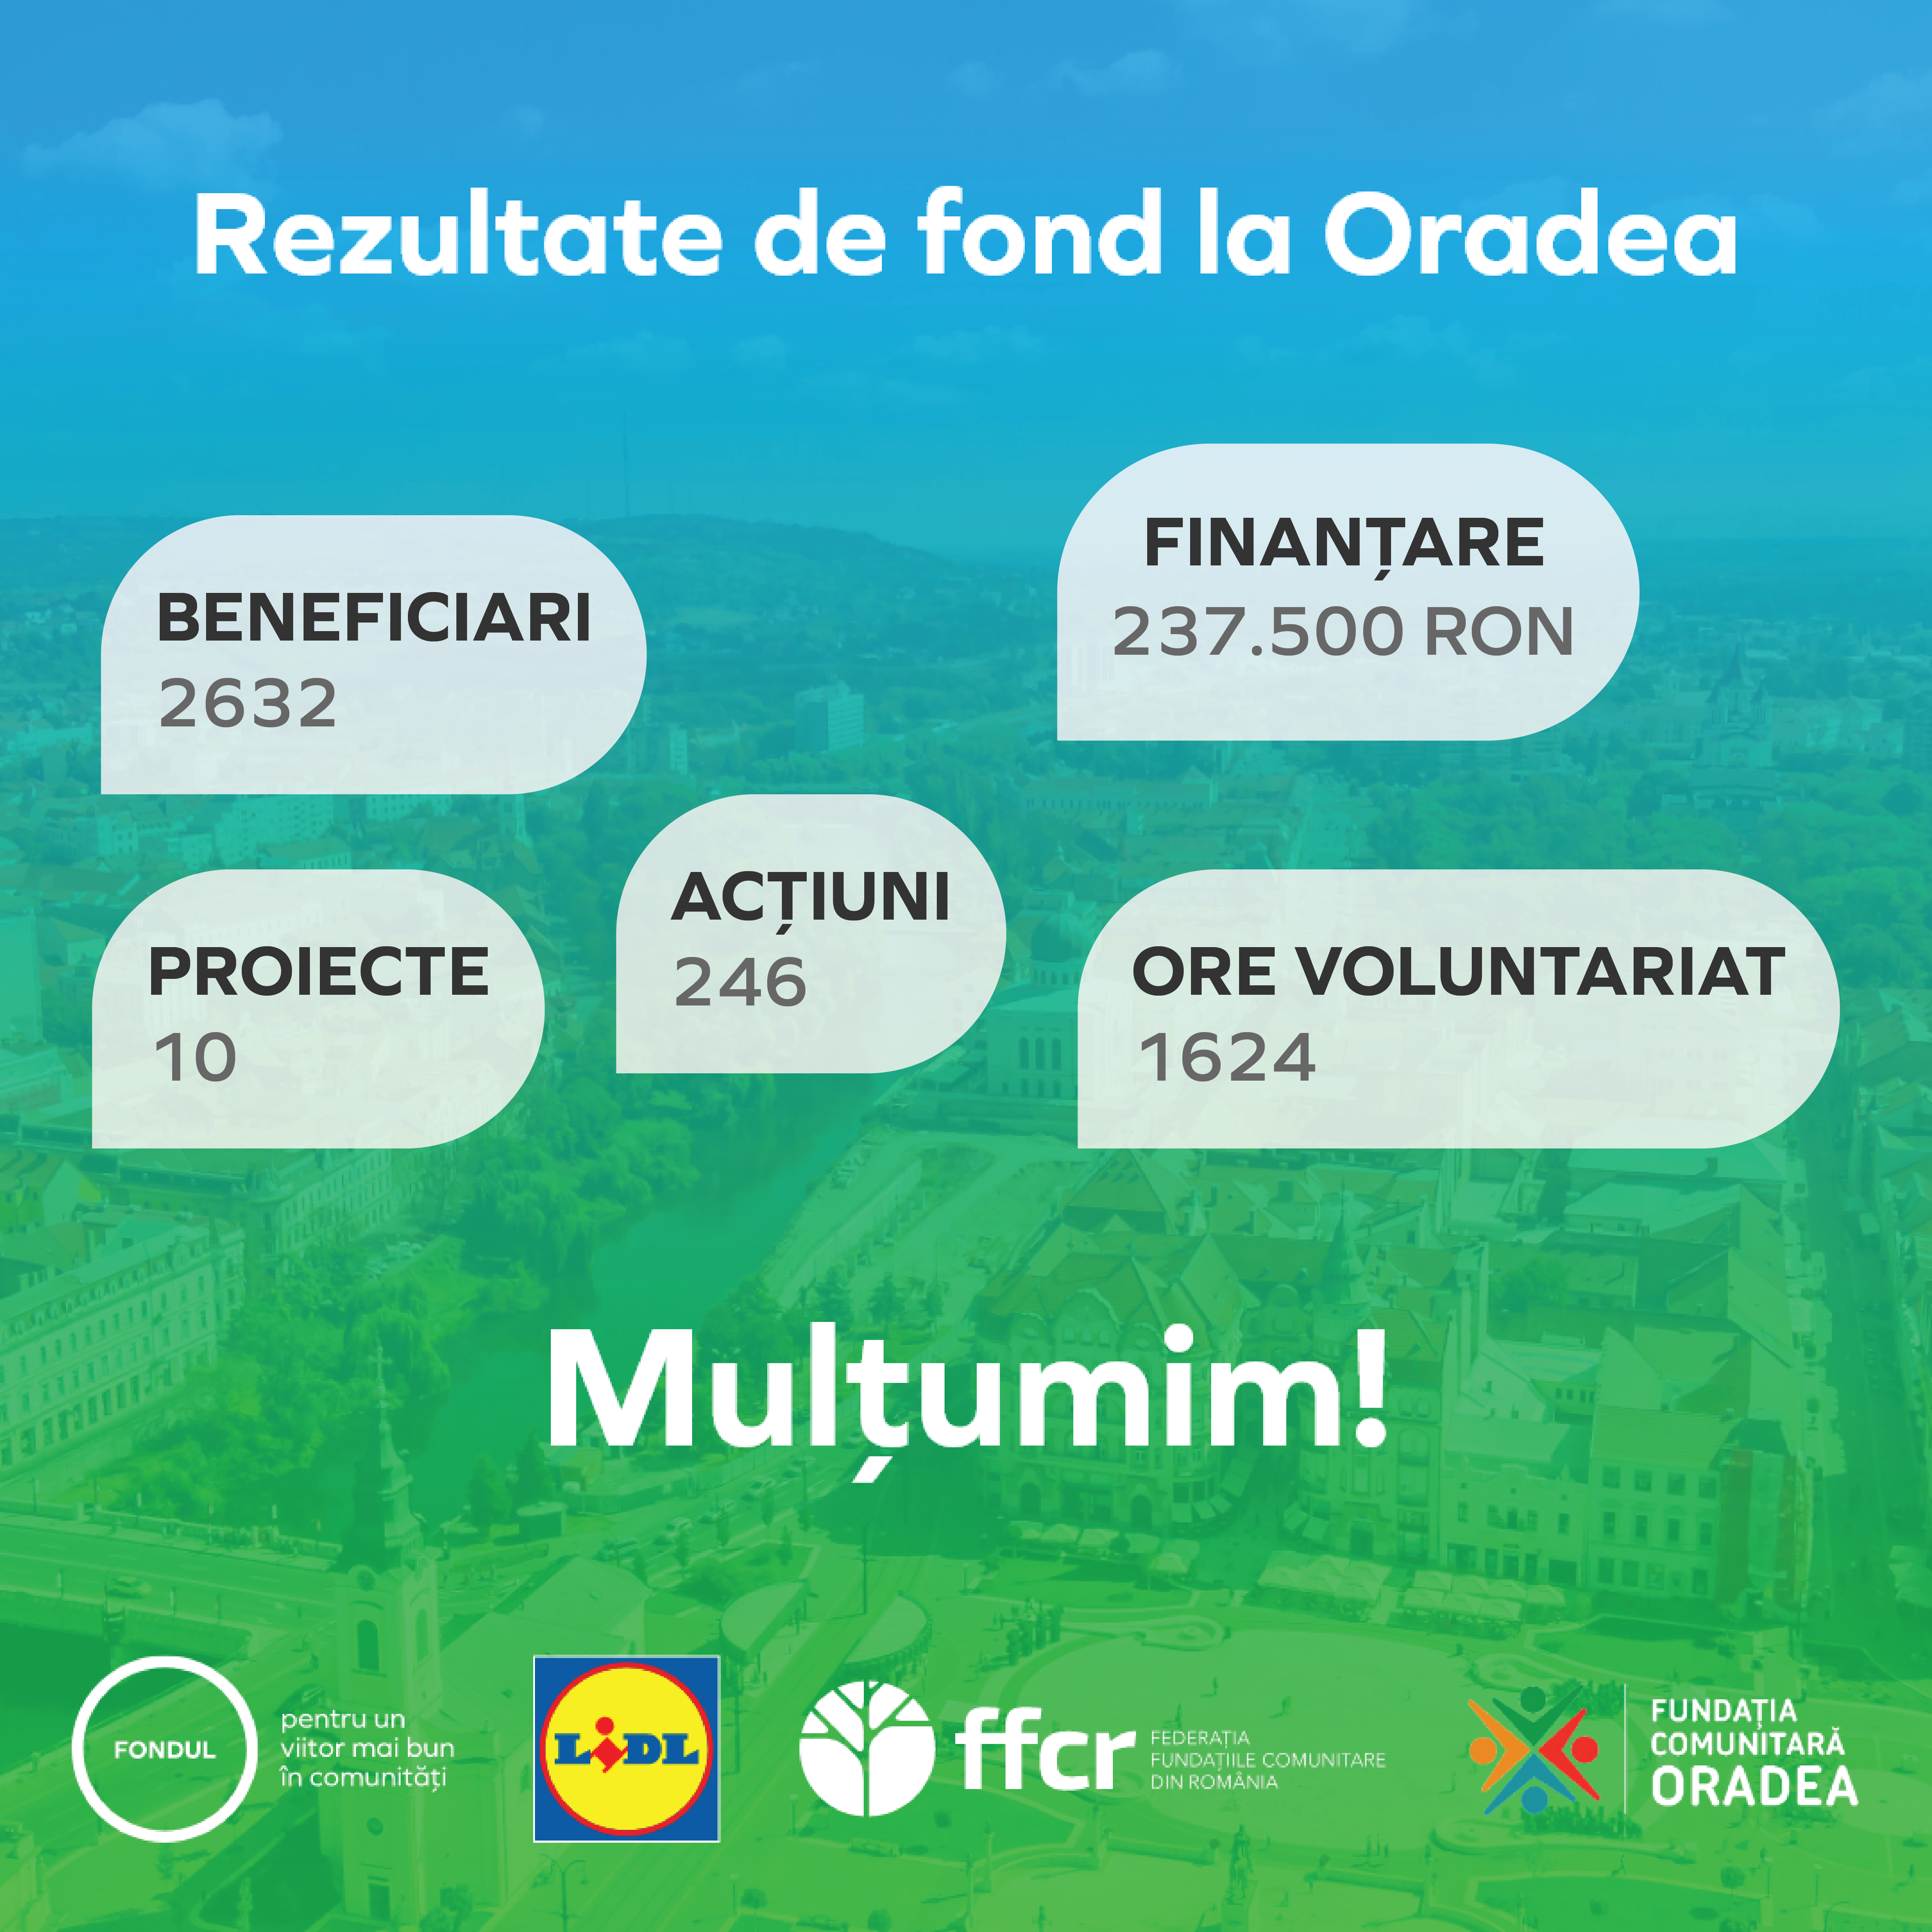 Cele 10 inițiative comunitare din Oradea finanțate prin programul național „Fondul pentru un viitor mai bun în comunități” își anunță rezultatele